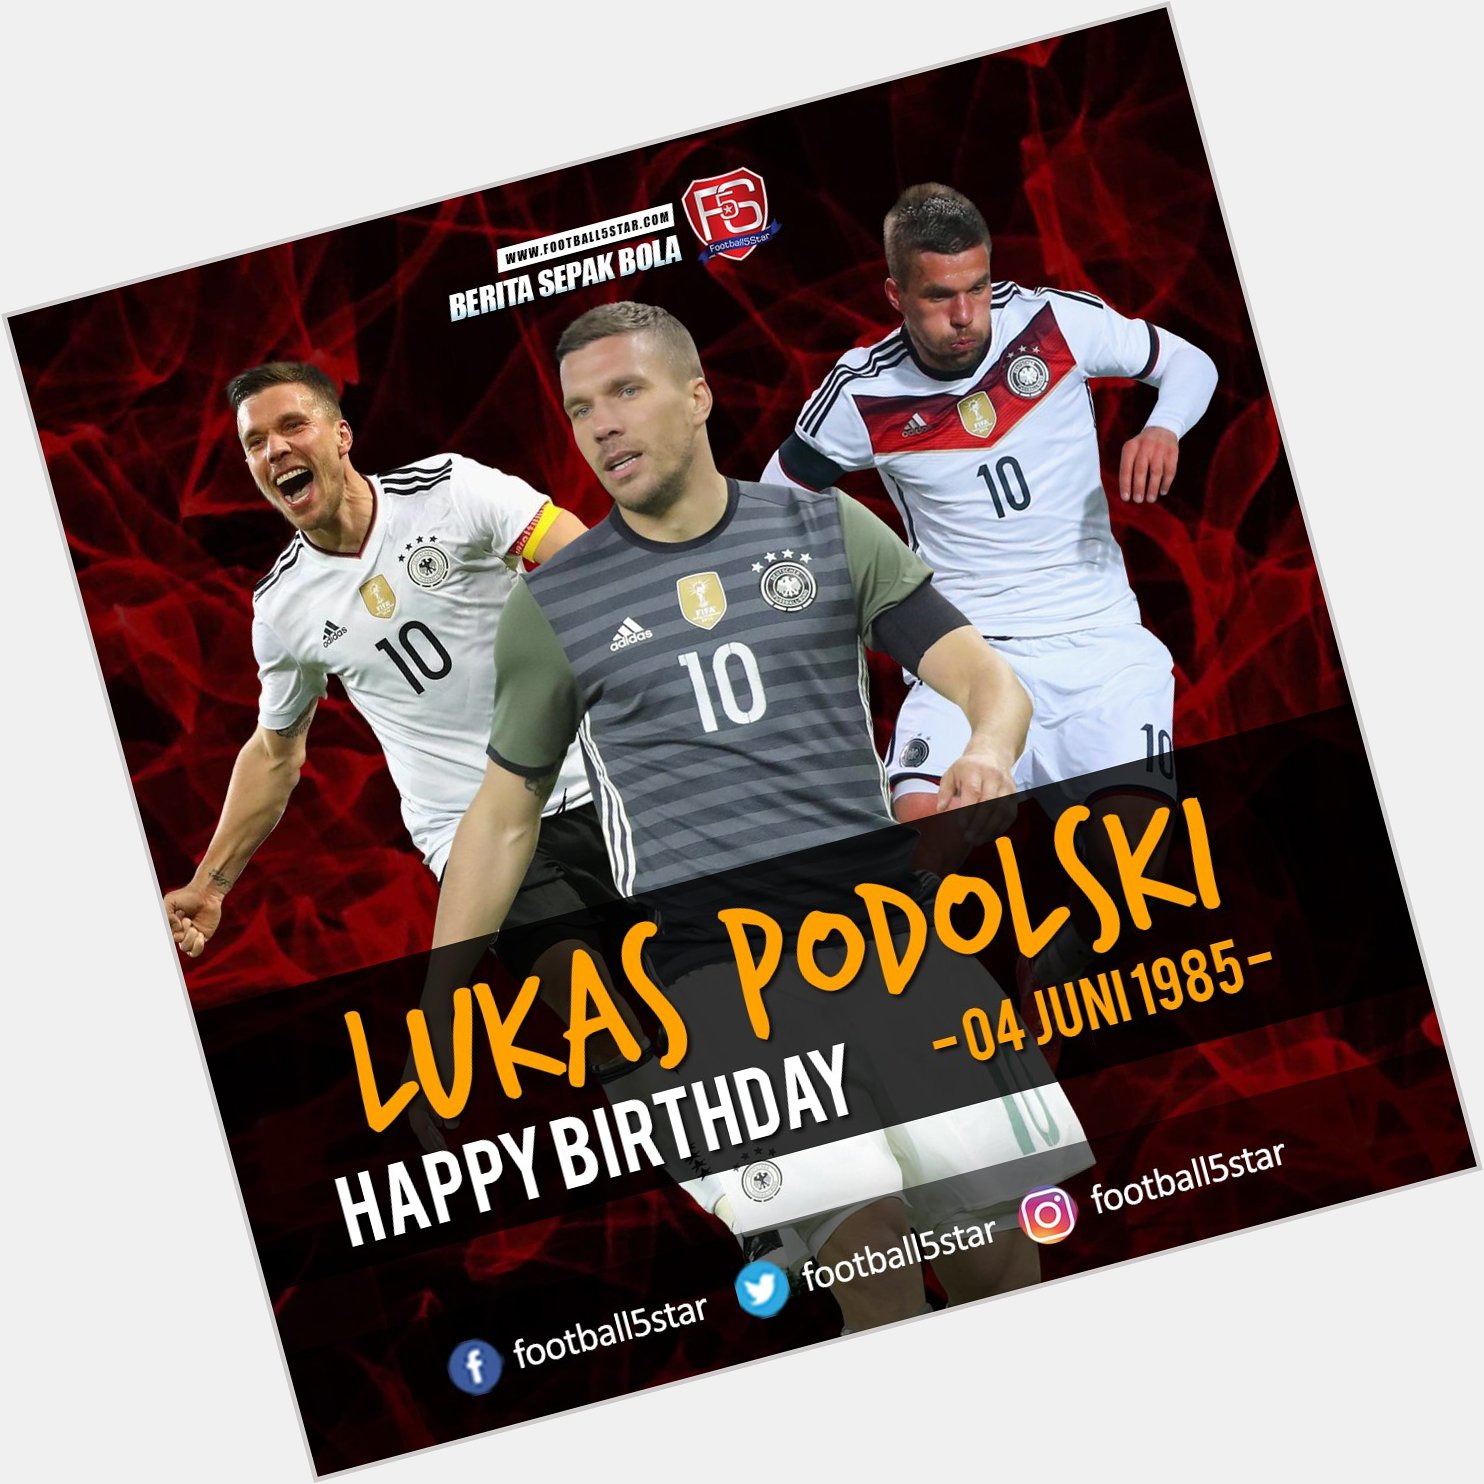 Happy Birthday Lukas Podolski 04 Juni 1985 